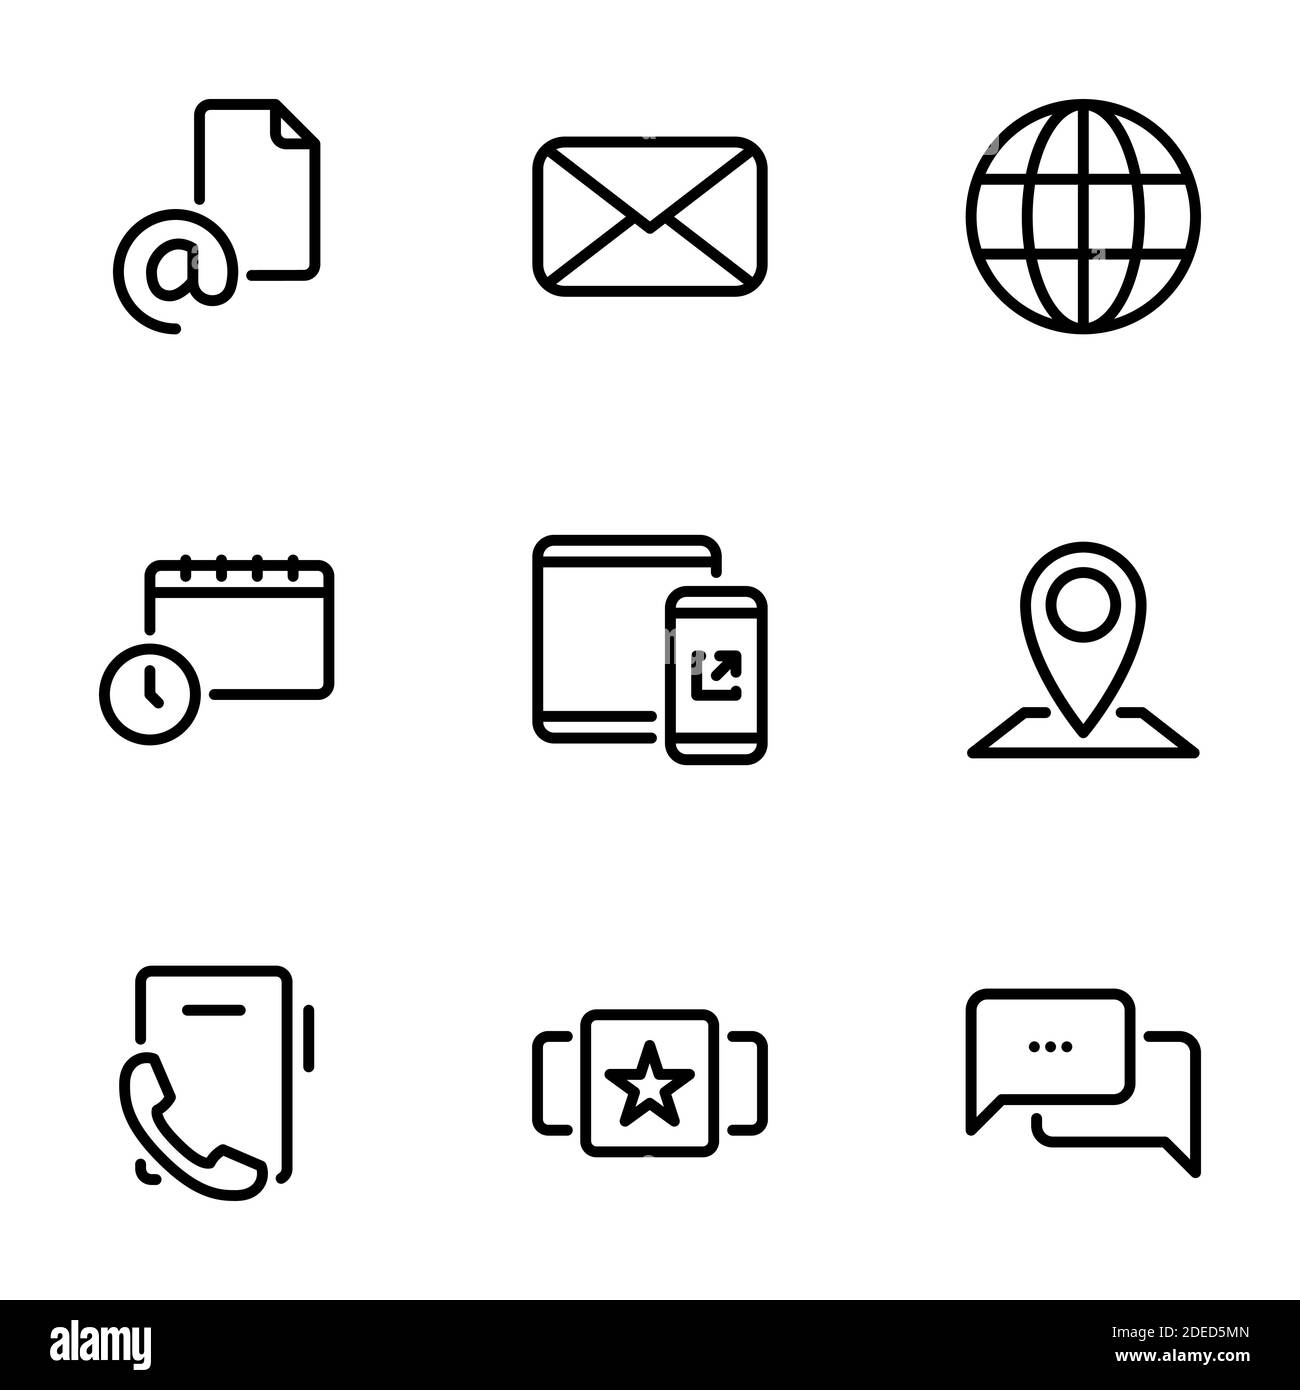 Insieme di icone nere isolate su sfondo bianco, sul tema Contattaci Illustrazione Vettoriale